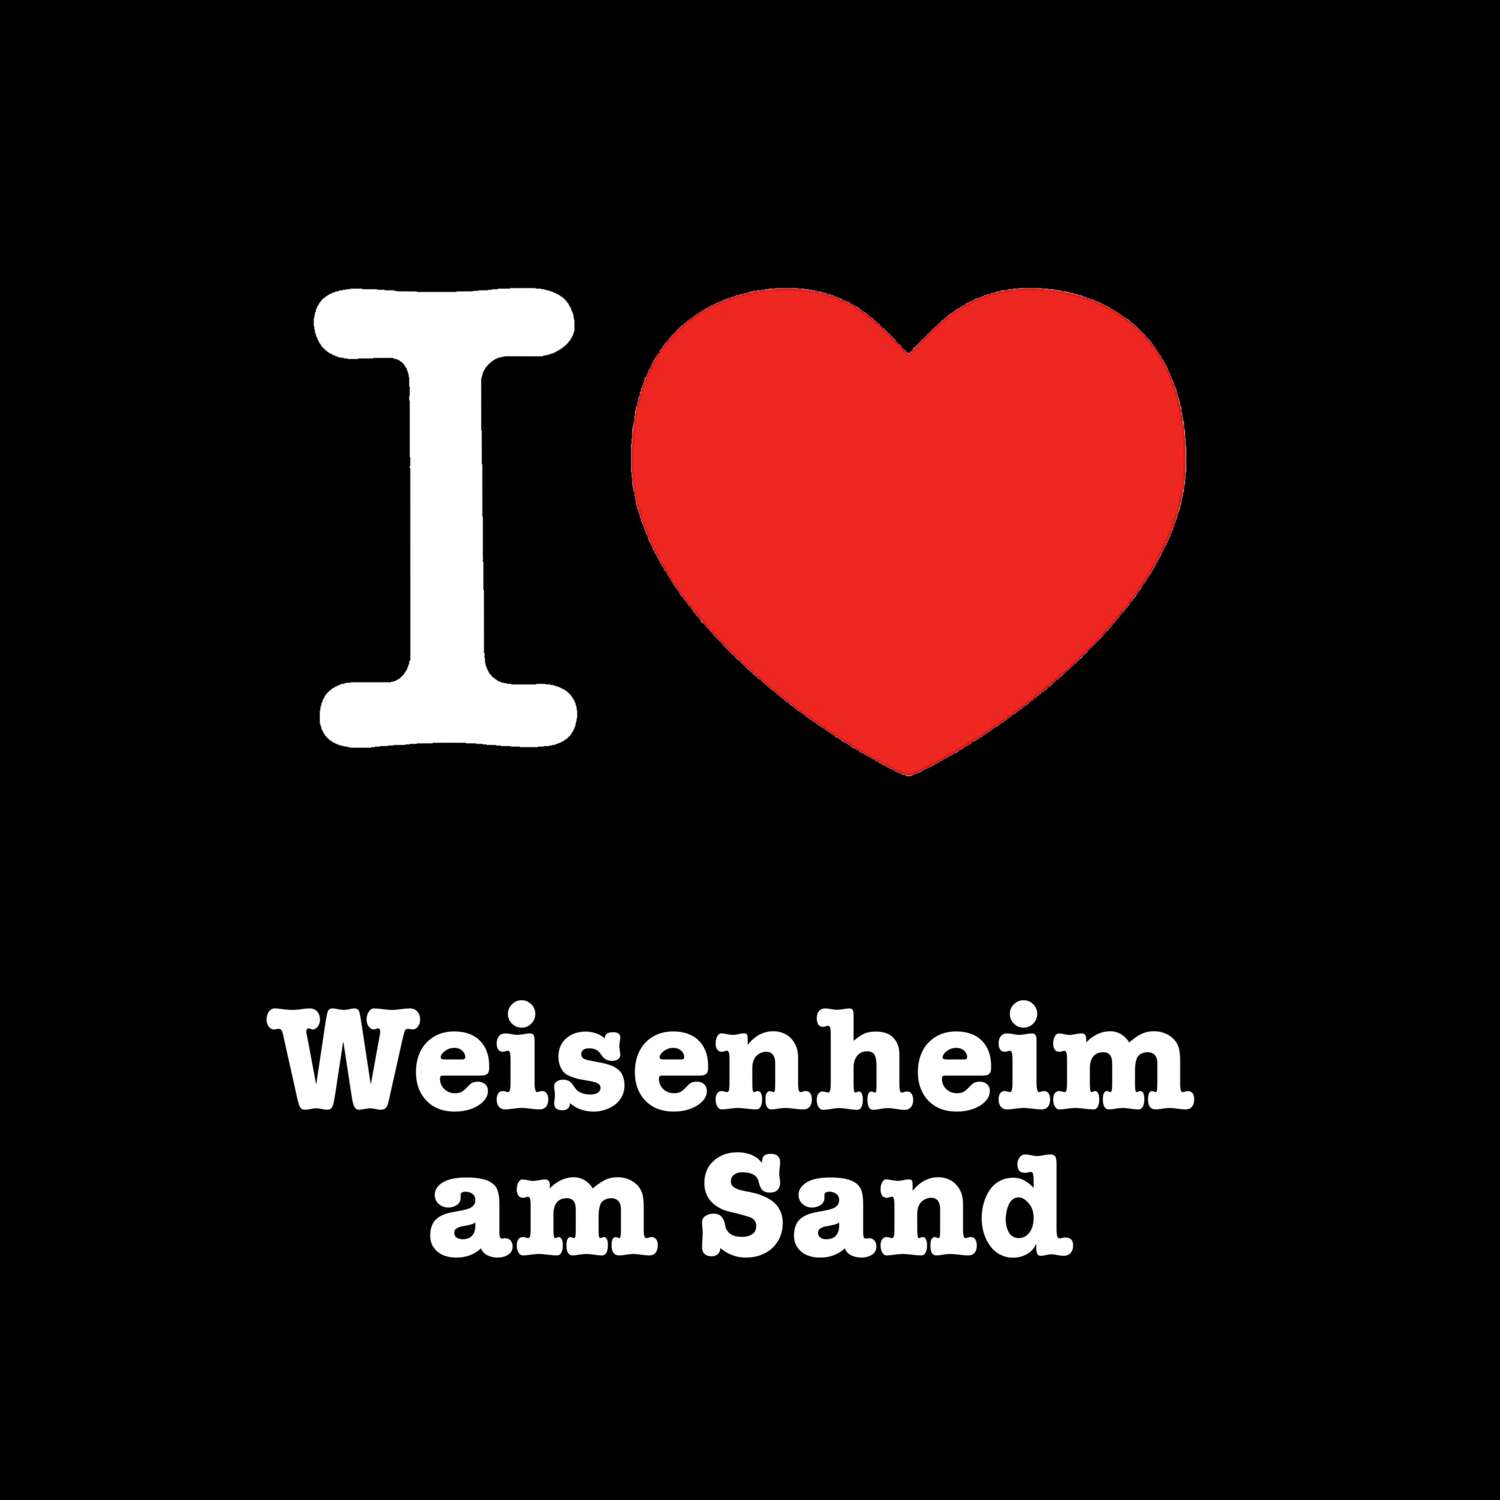 Weisenheim am Sand T-Shirt »I love«